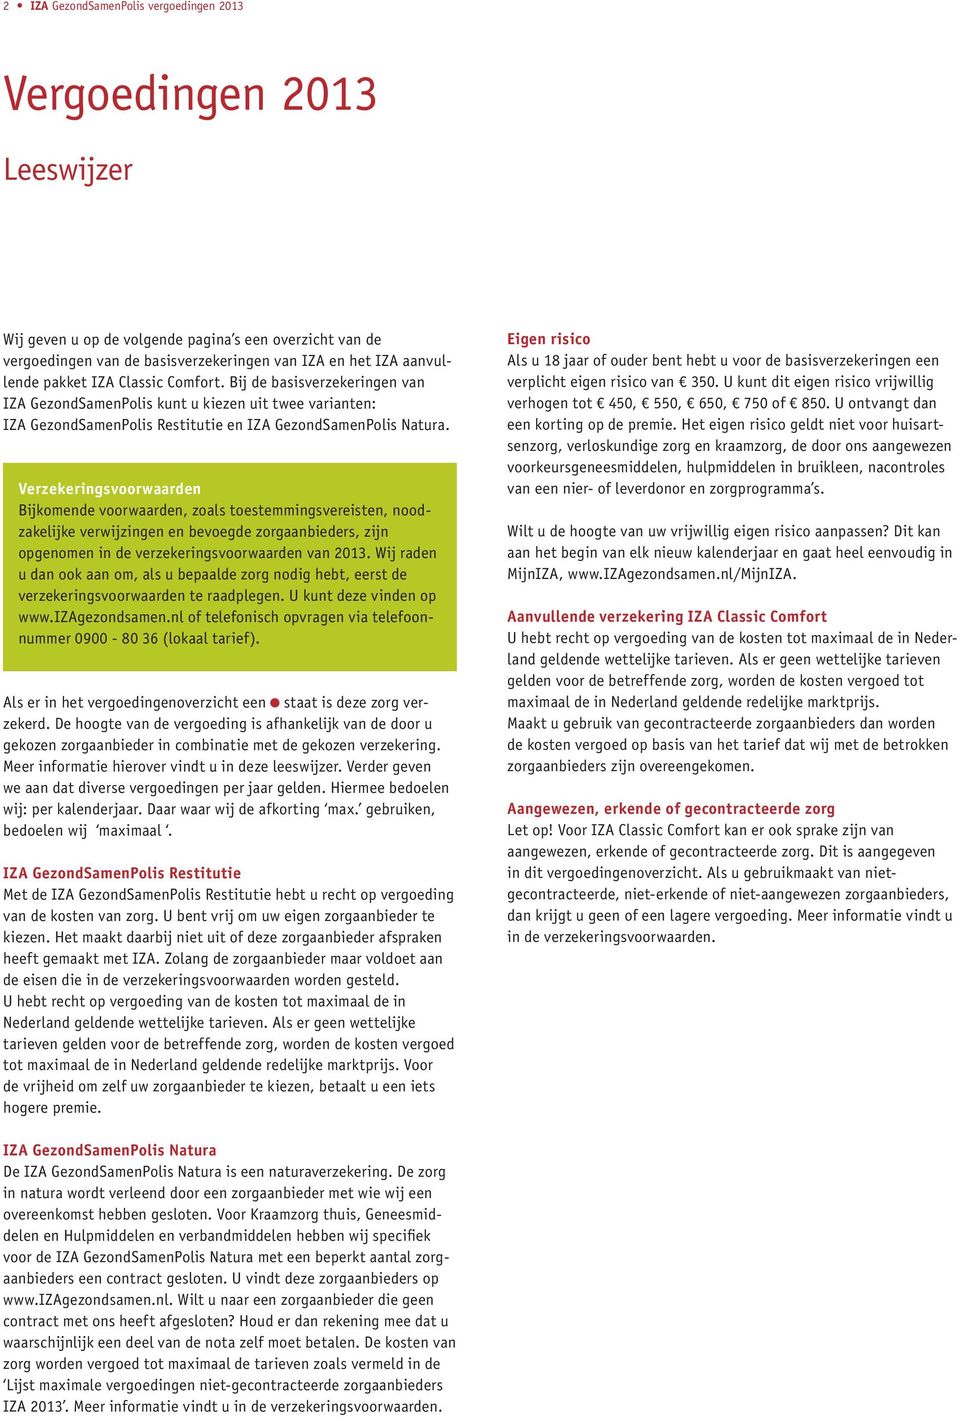 Verzekeringsvoorwaarden Bijkomende voorwaarden, zoals toestemmingsvereisten, noodzakelijke verwijzingen en bevoegde zorgaanbieders, zijn opgenomen in de verzekeringsvoorwaarden van 2013.